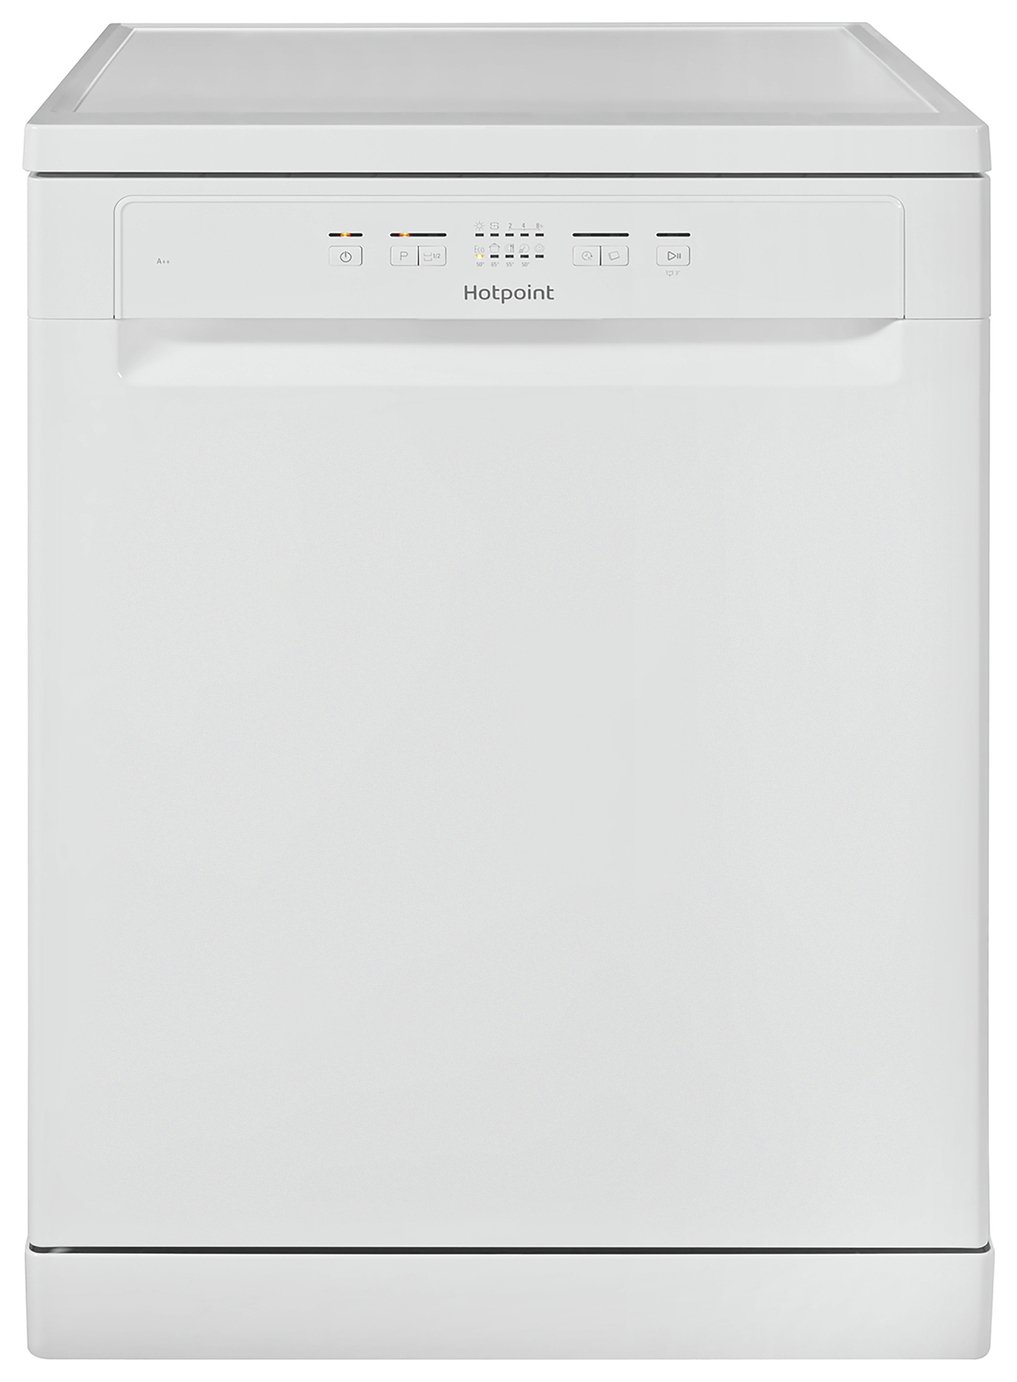 Hotpoint 2B+26 C N UK Full Size Dishwasher - White